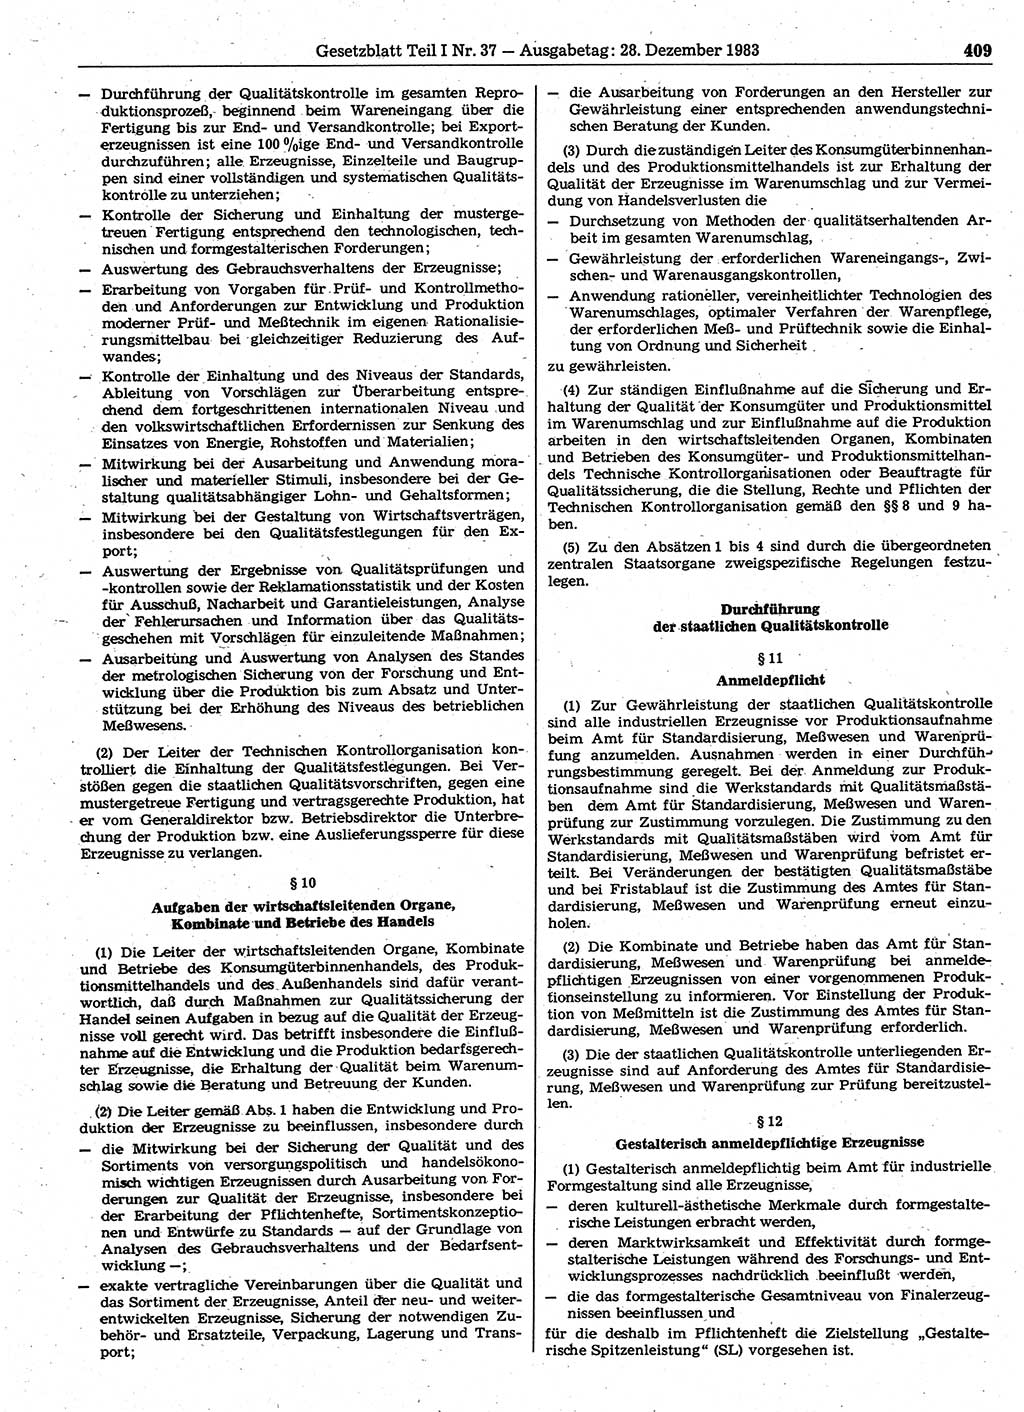 Gesetzblatt (GBl.) der Deutschen Demokratischen Republik (DDR) Teil Ⅰ 1983, Seite 409 (GBl. DDR Ⅰ 1983, S. 409)